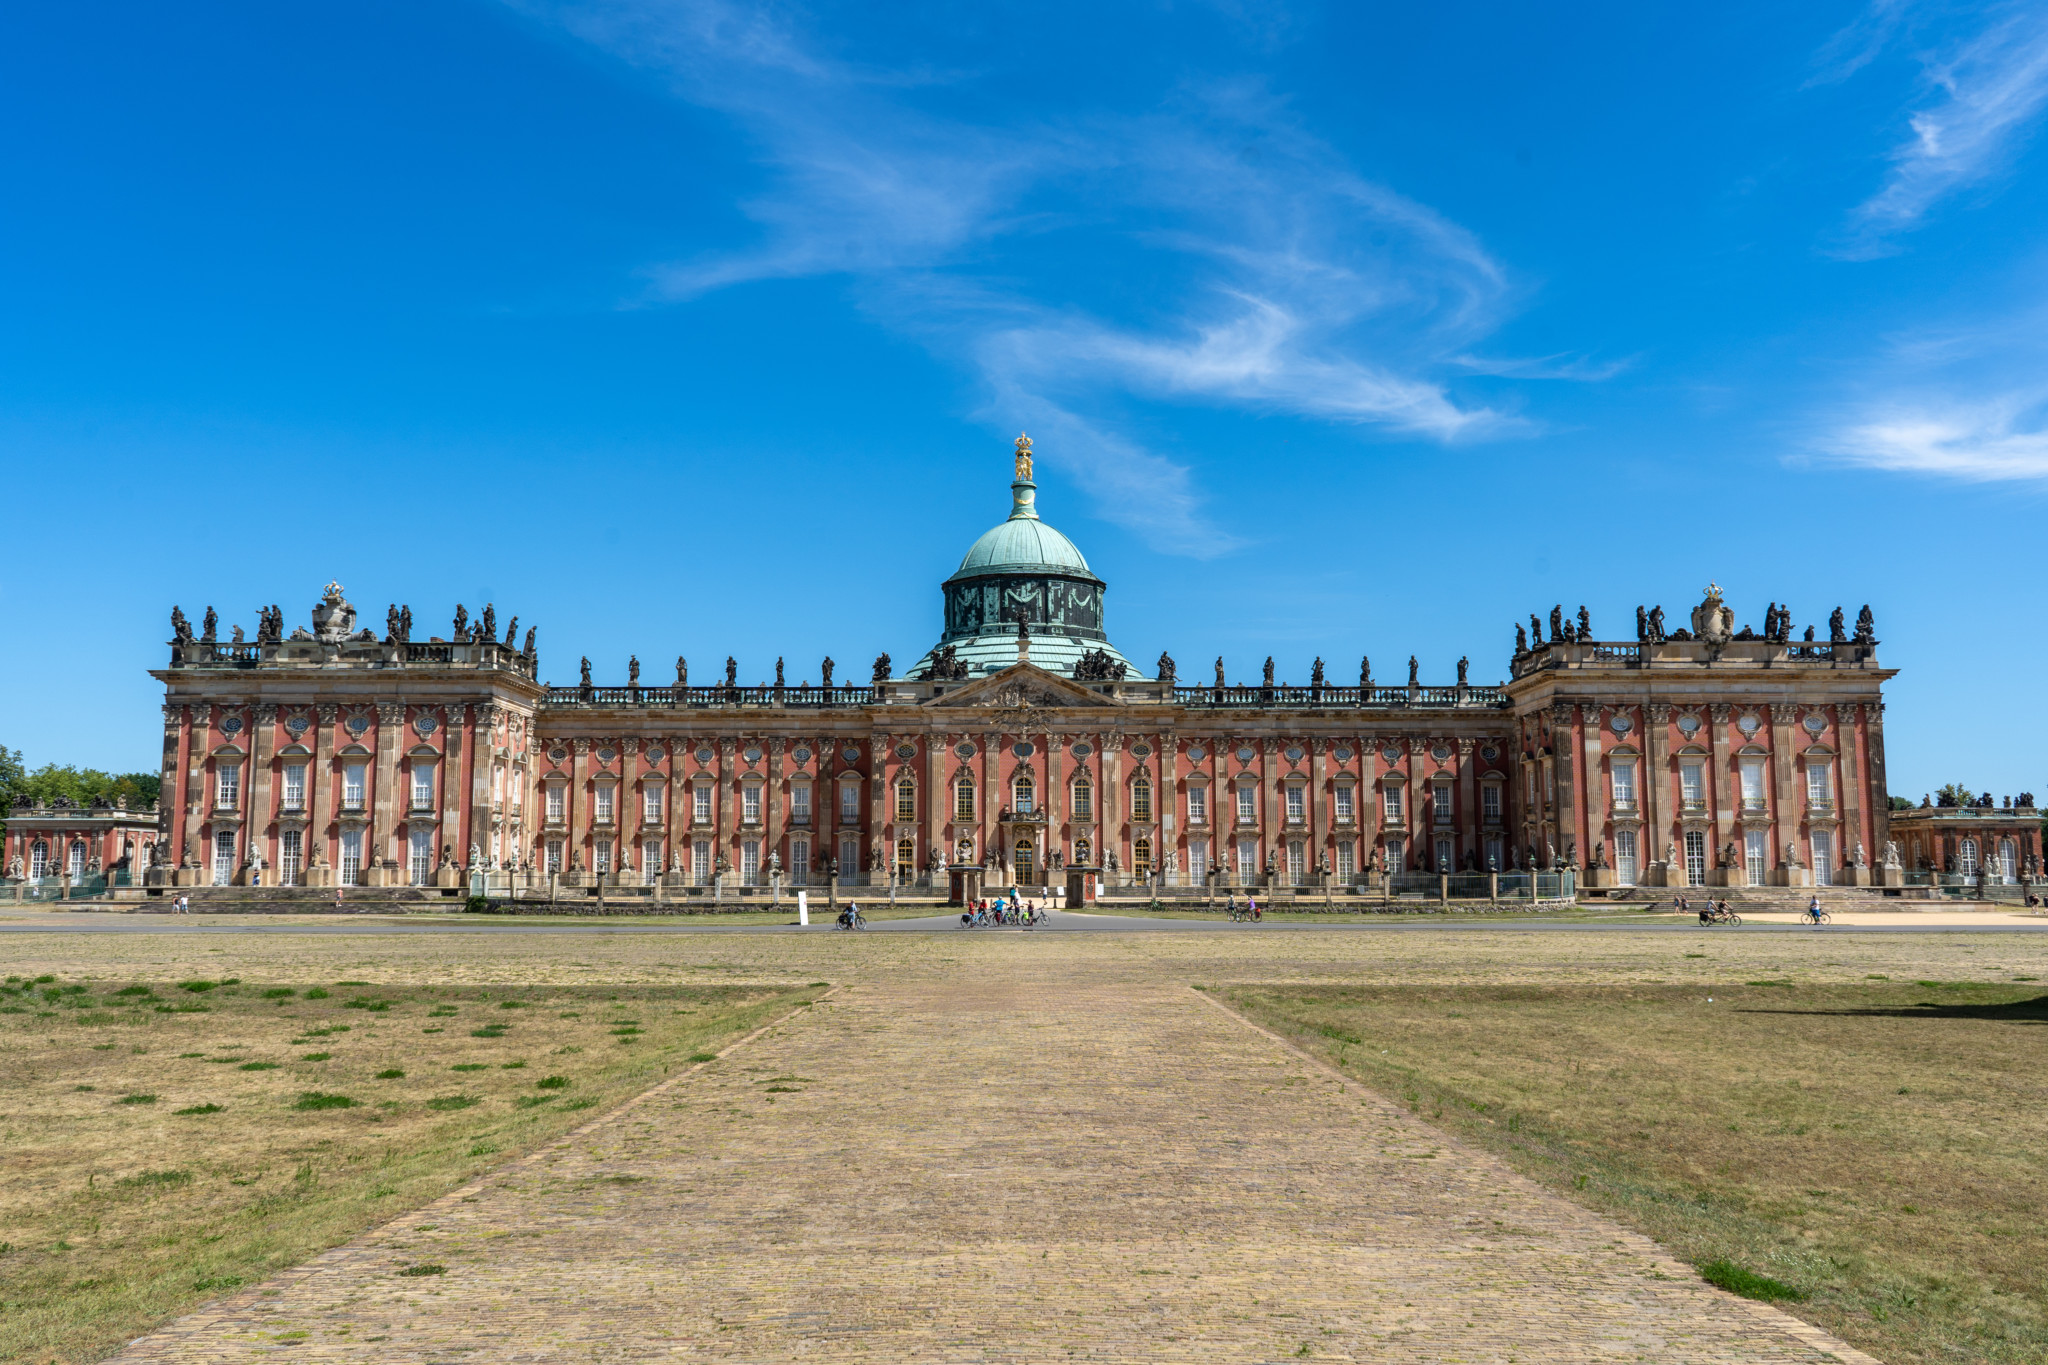 Das Neue Palais gehört zu den wichtigsten Potsdam Sehenswürdigkeiten